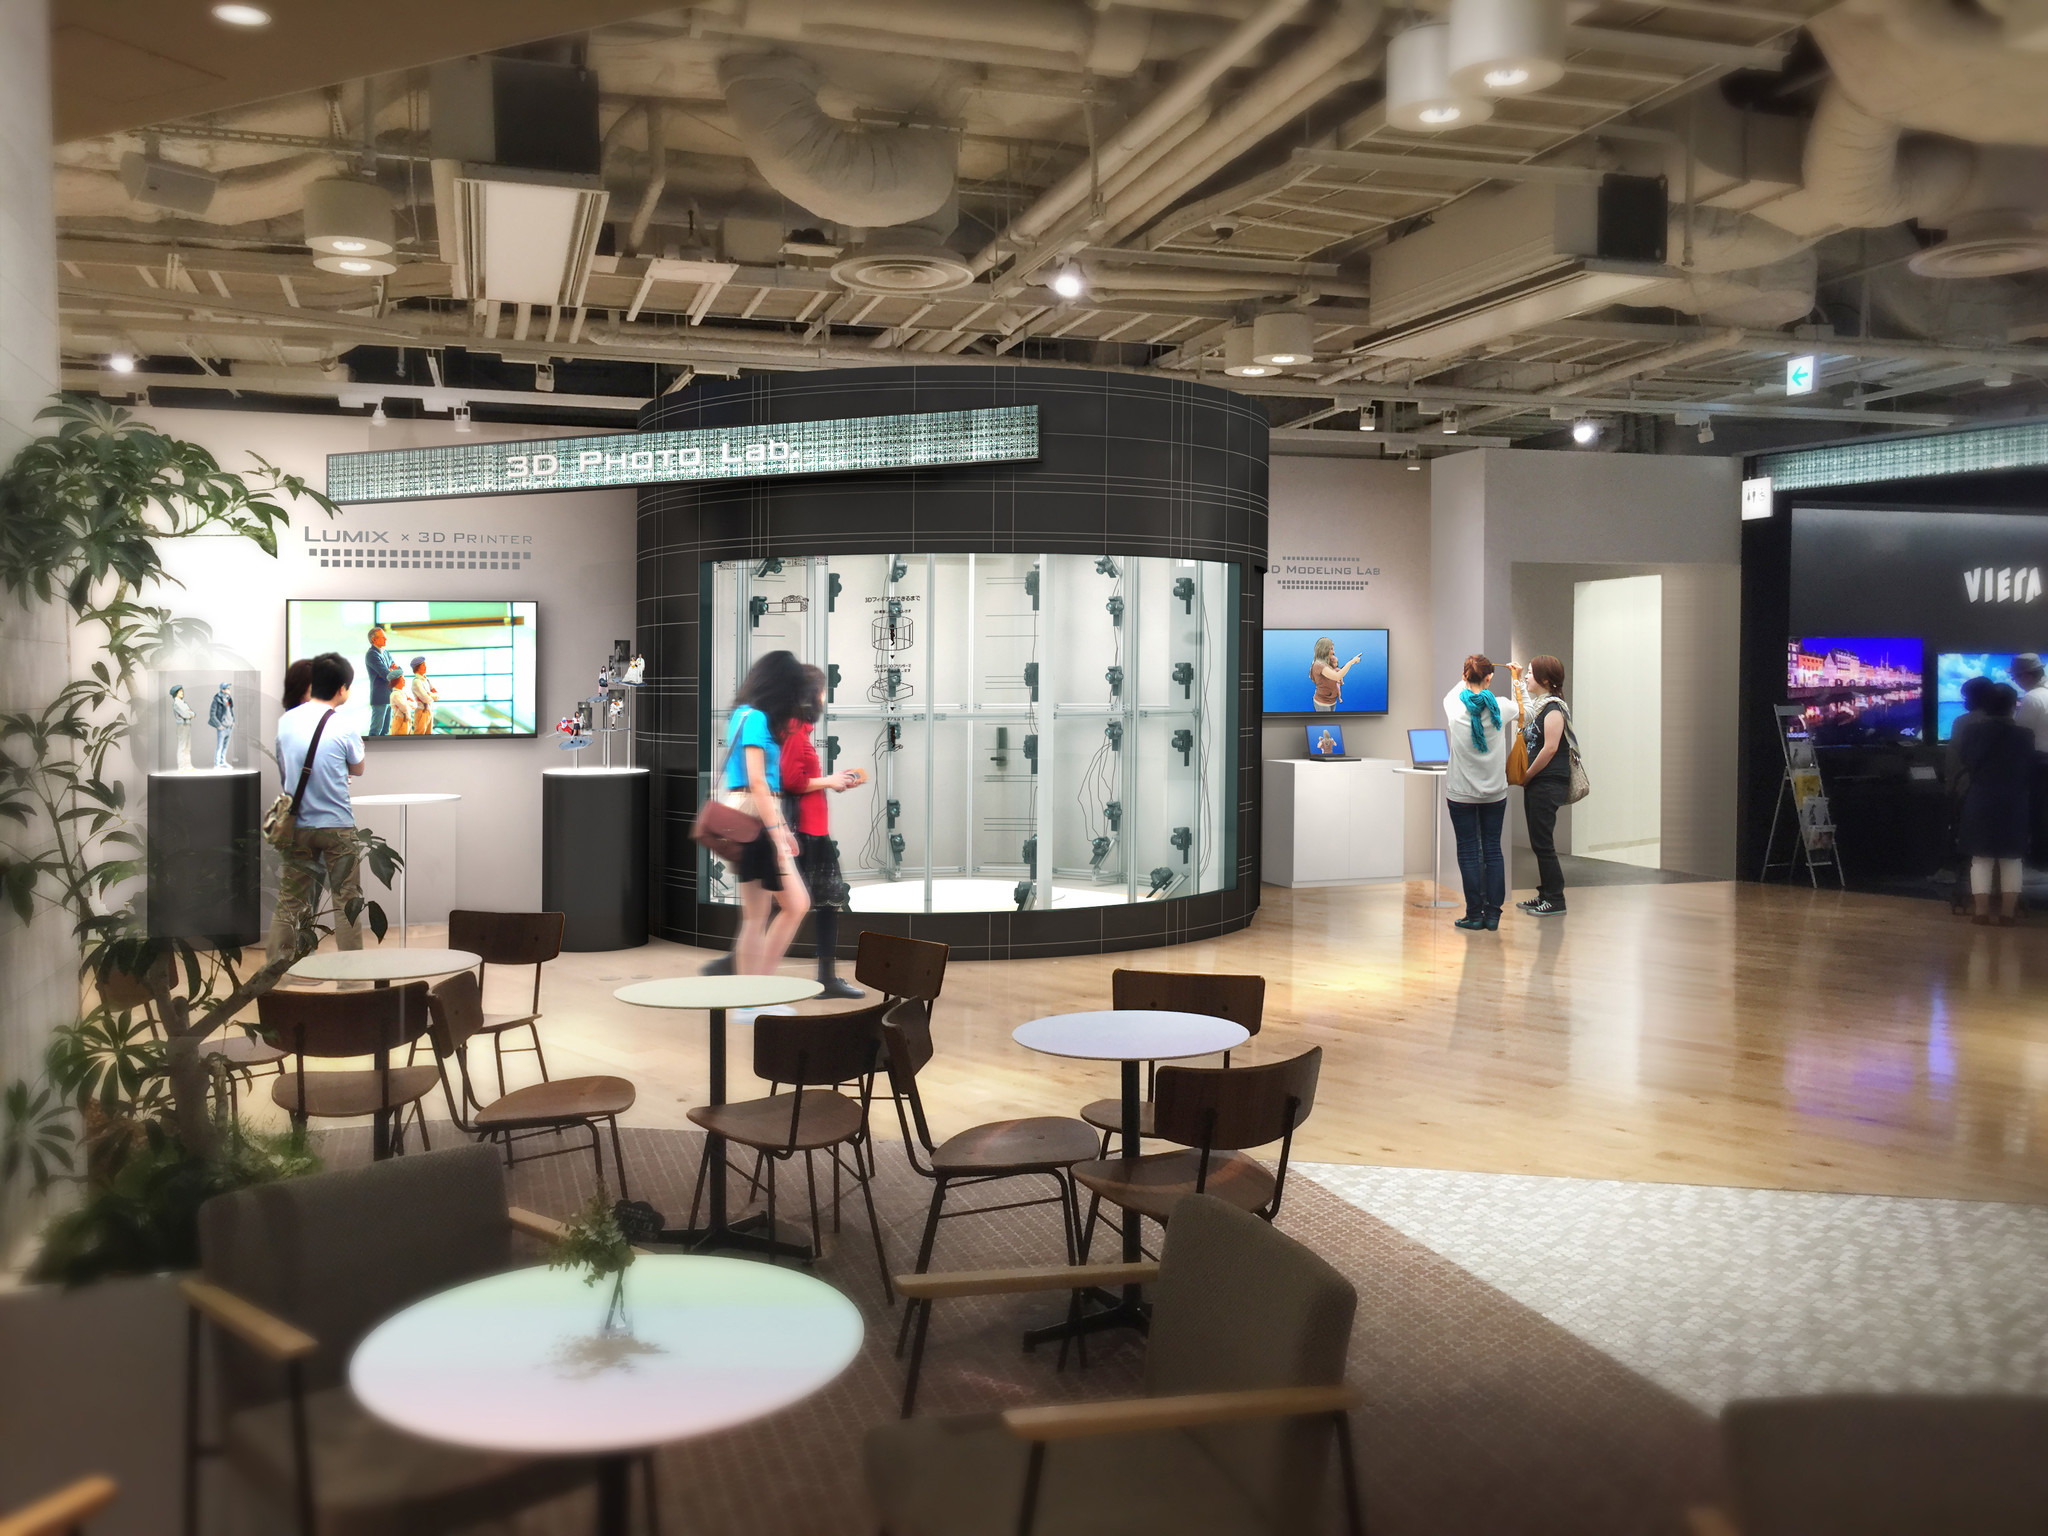 パナソニックセンター大阪 1台のlumixで3d撮影できる 3d Photo Lab オープン 高精細3dフィギュアの製作サービスも開始 パナソニックのプレスリリース